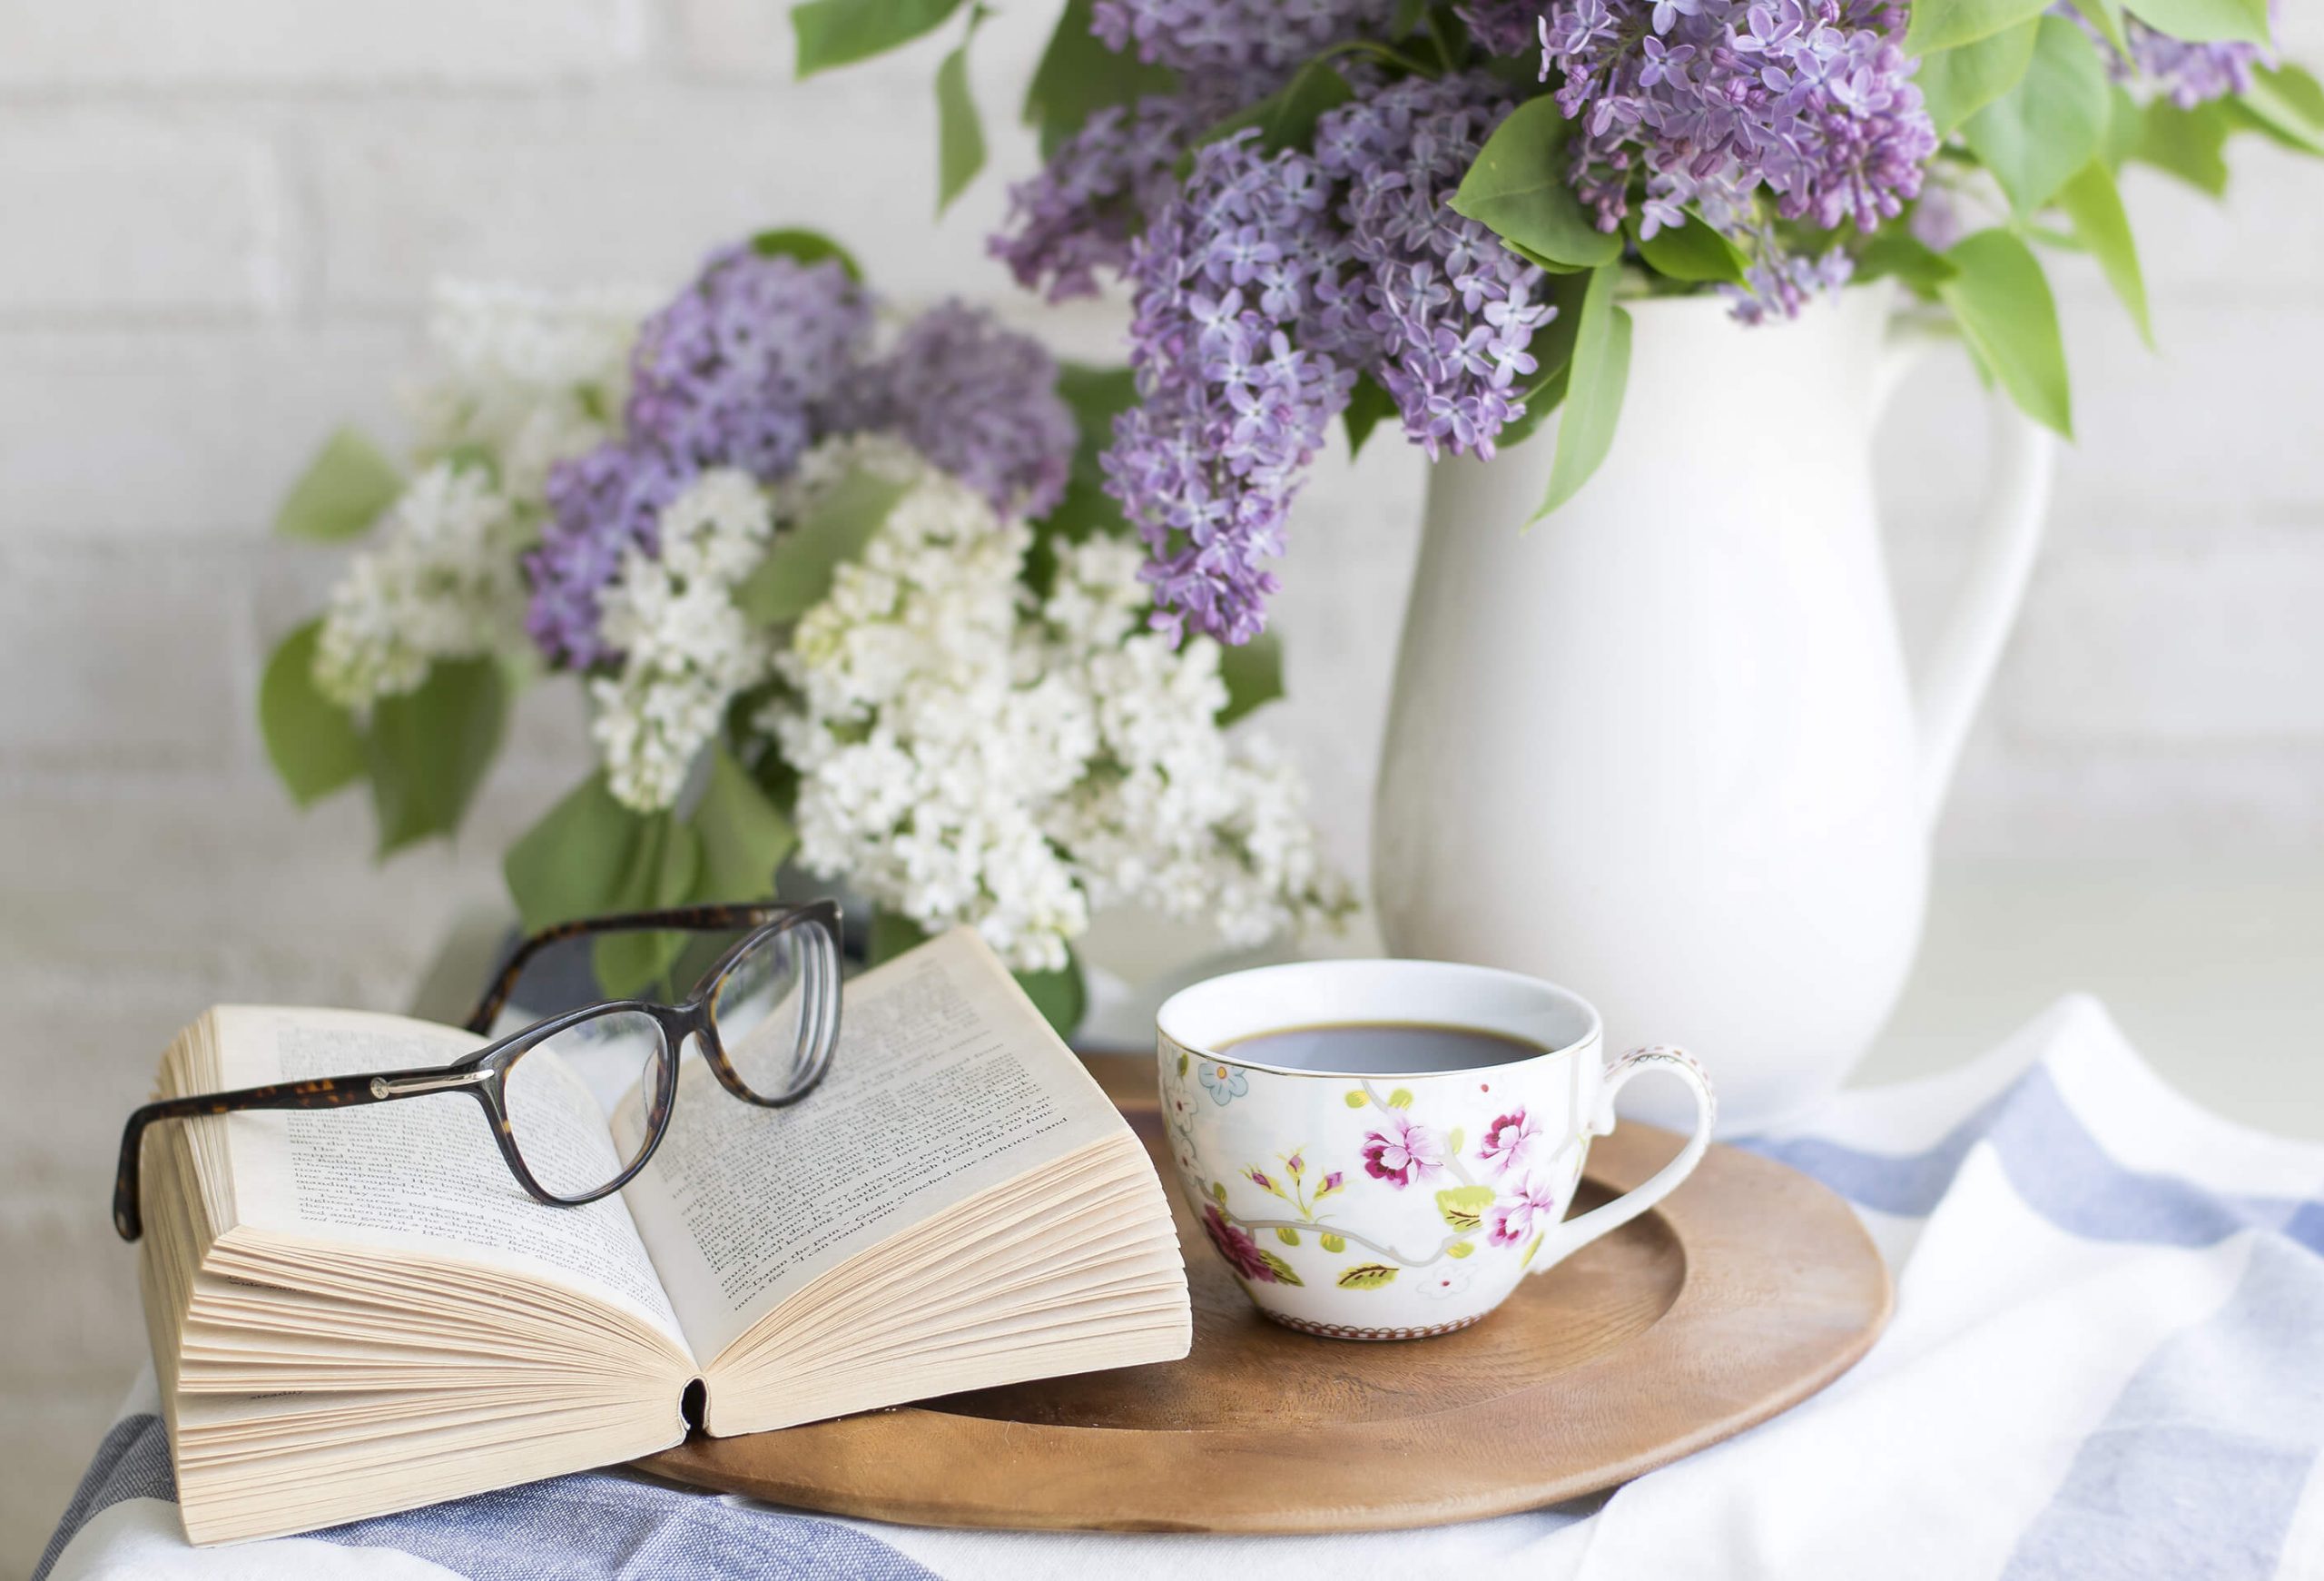 Libro aperto con occhiali appoggiati vicino ad una tazzina da caffè e sullo sfondo dei fiori